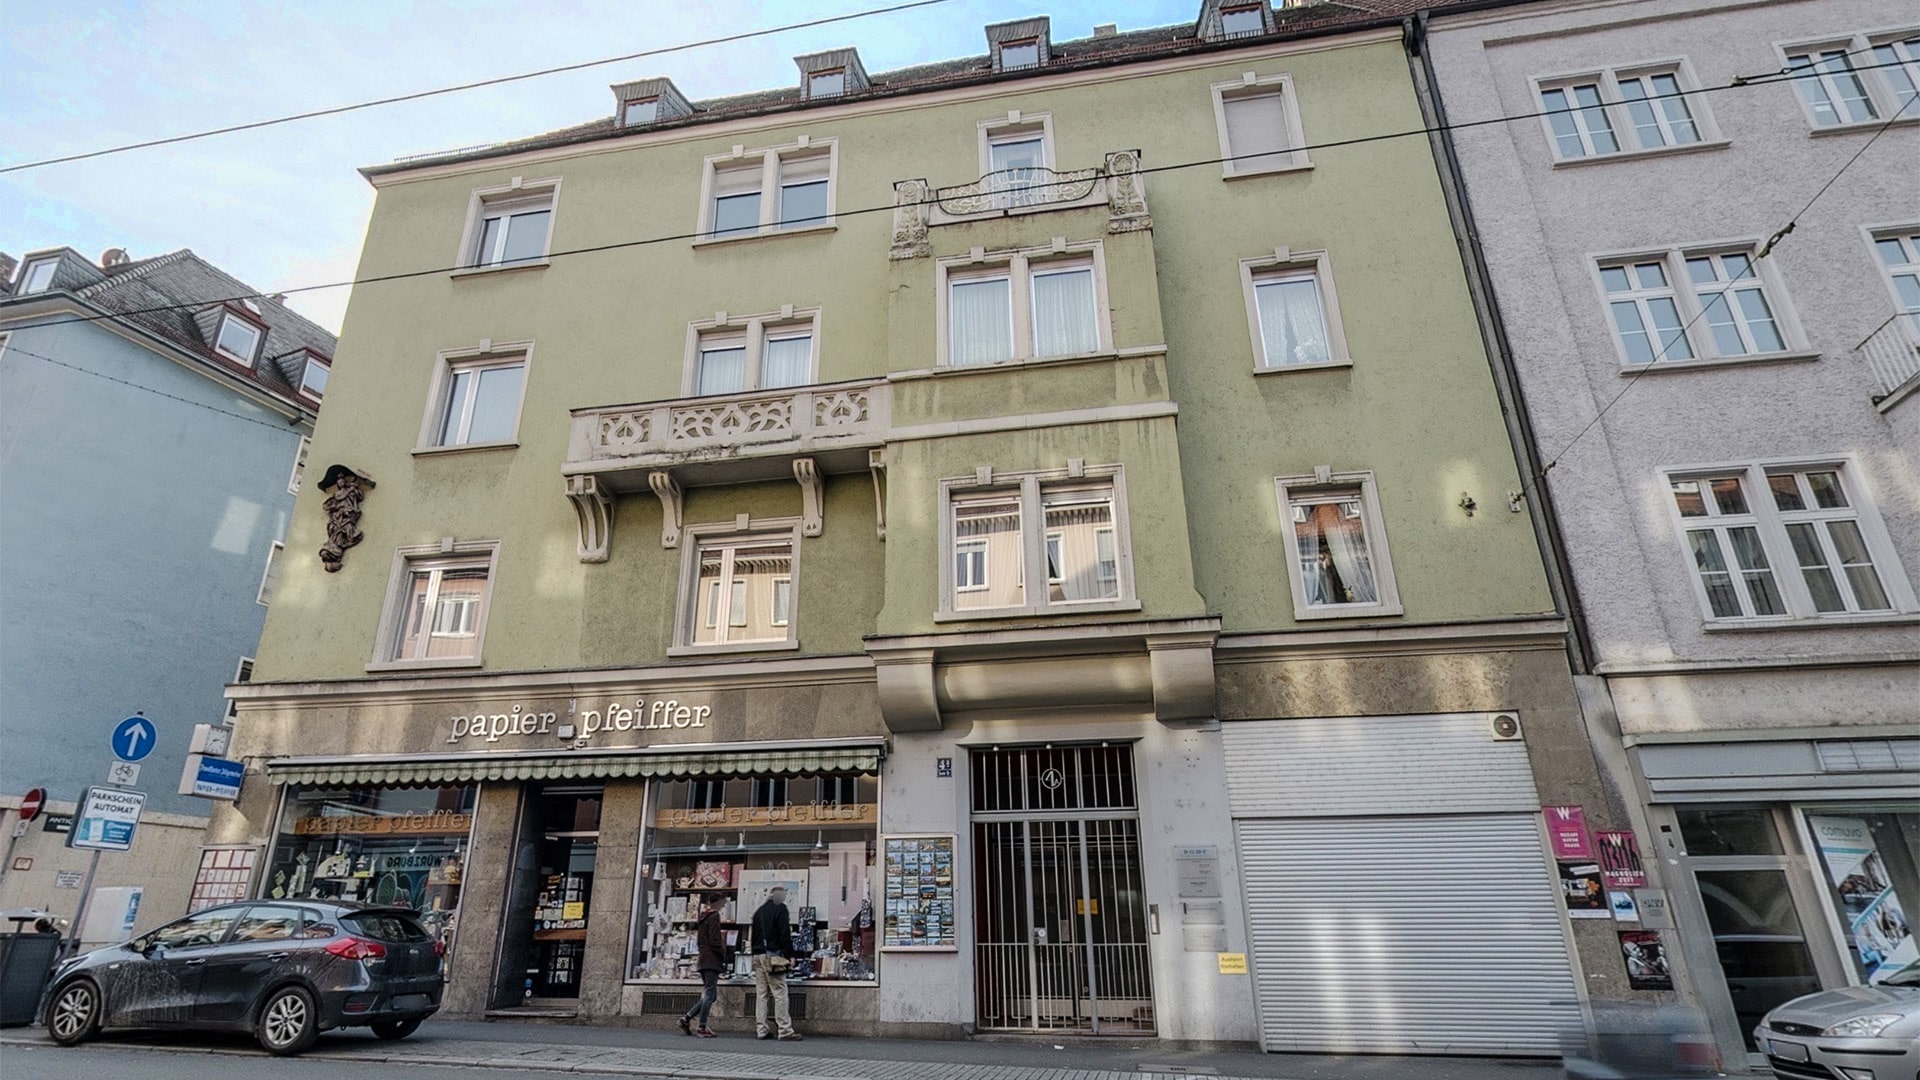 Würzburg translation office